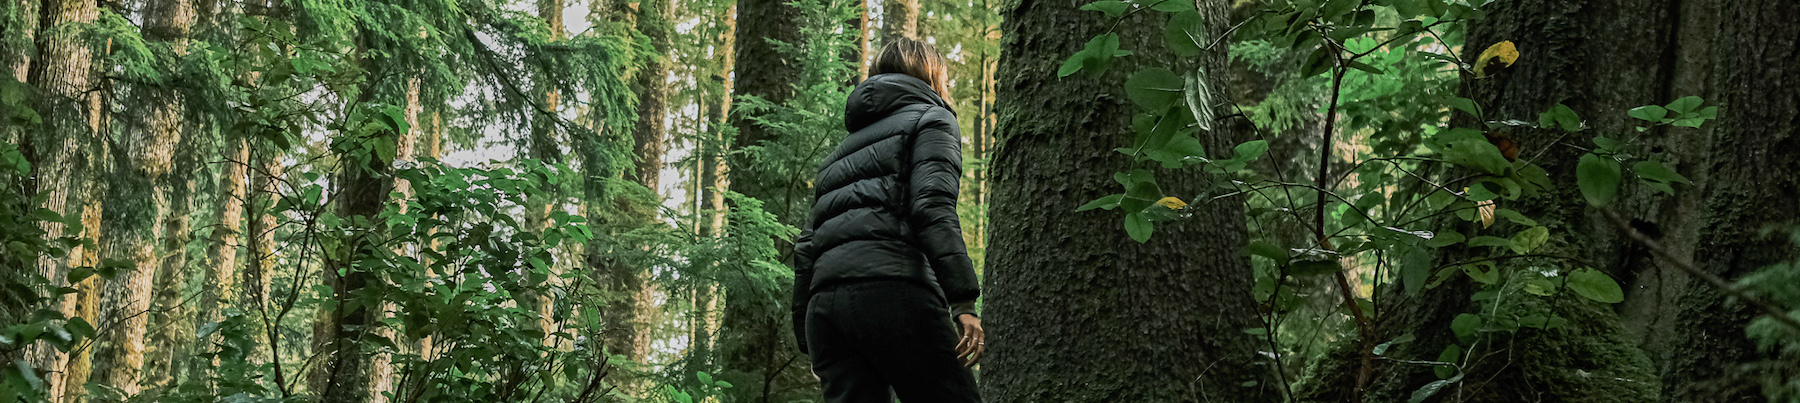 Fairy Creek Blockade: protéger les forêts d’arbres ancestraux dans l’Ouest canadien